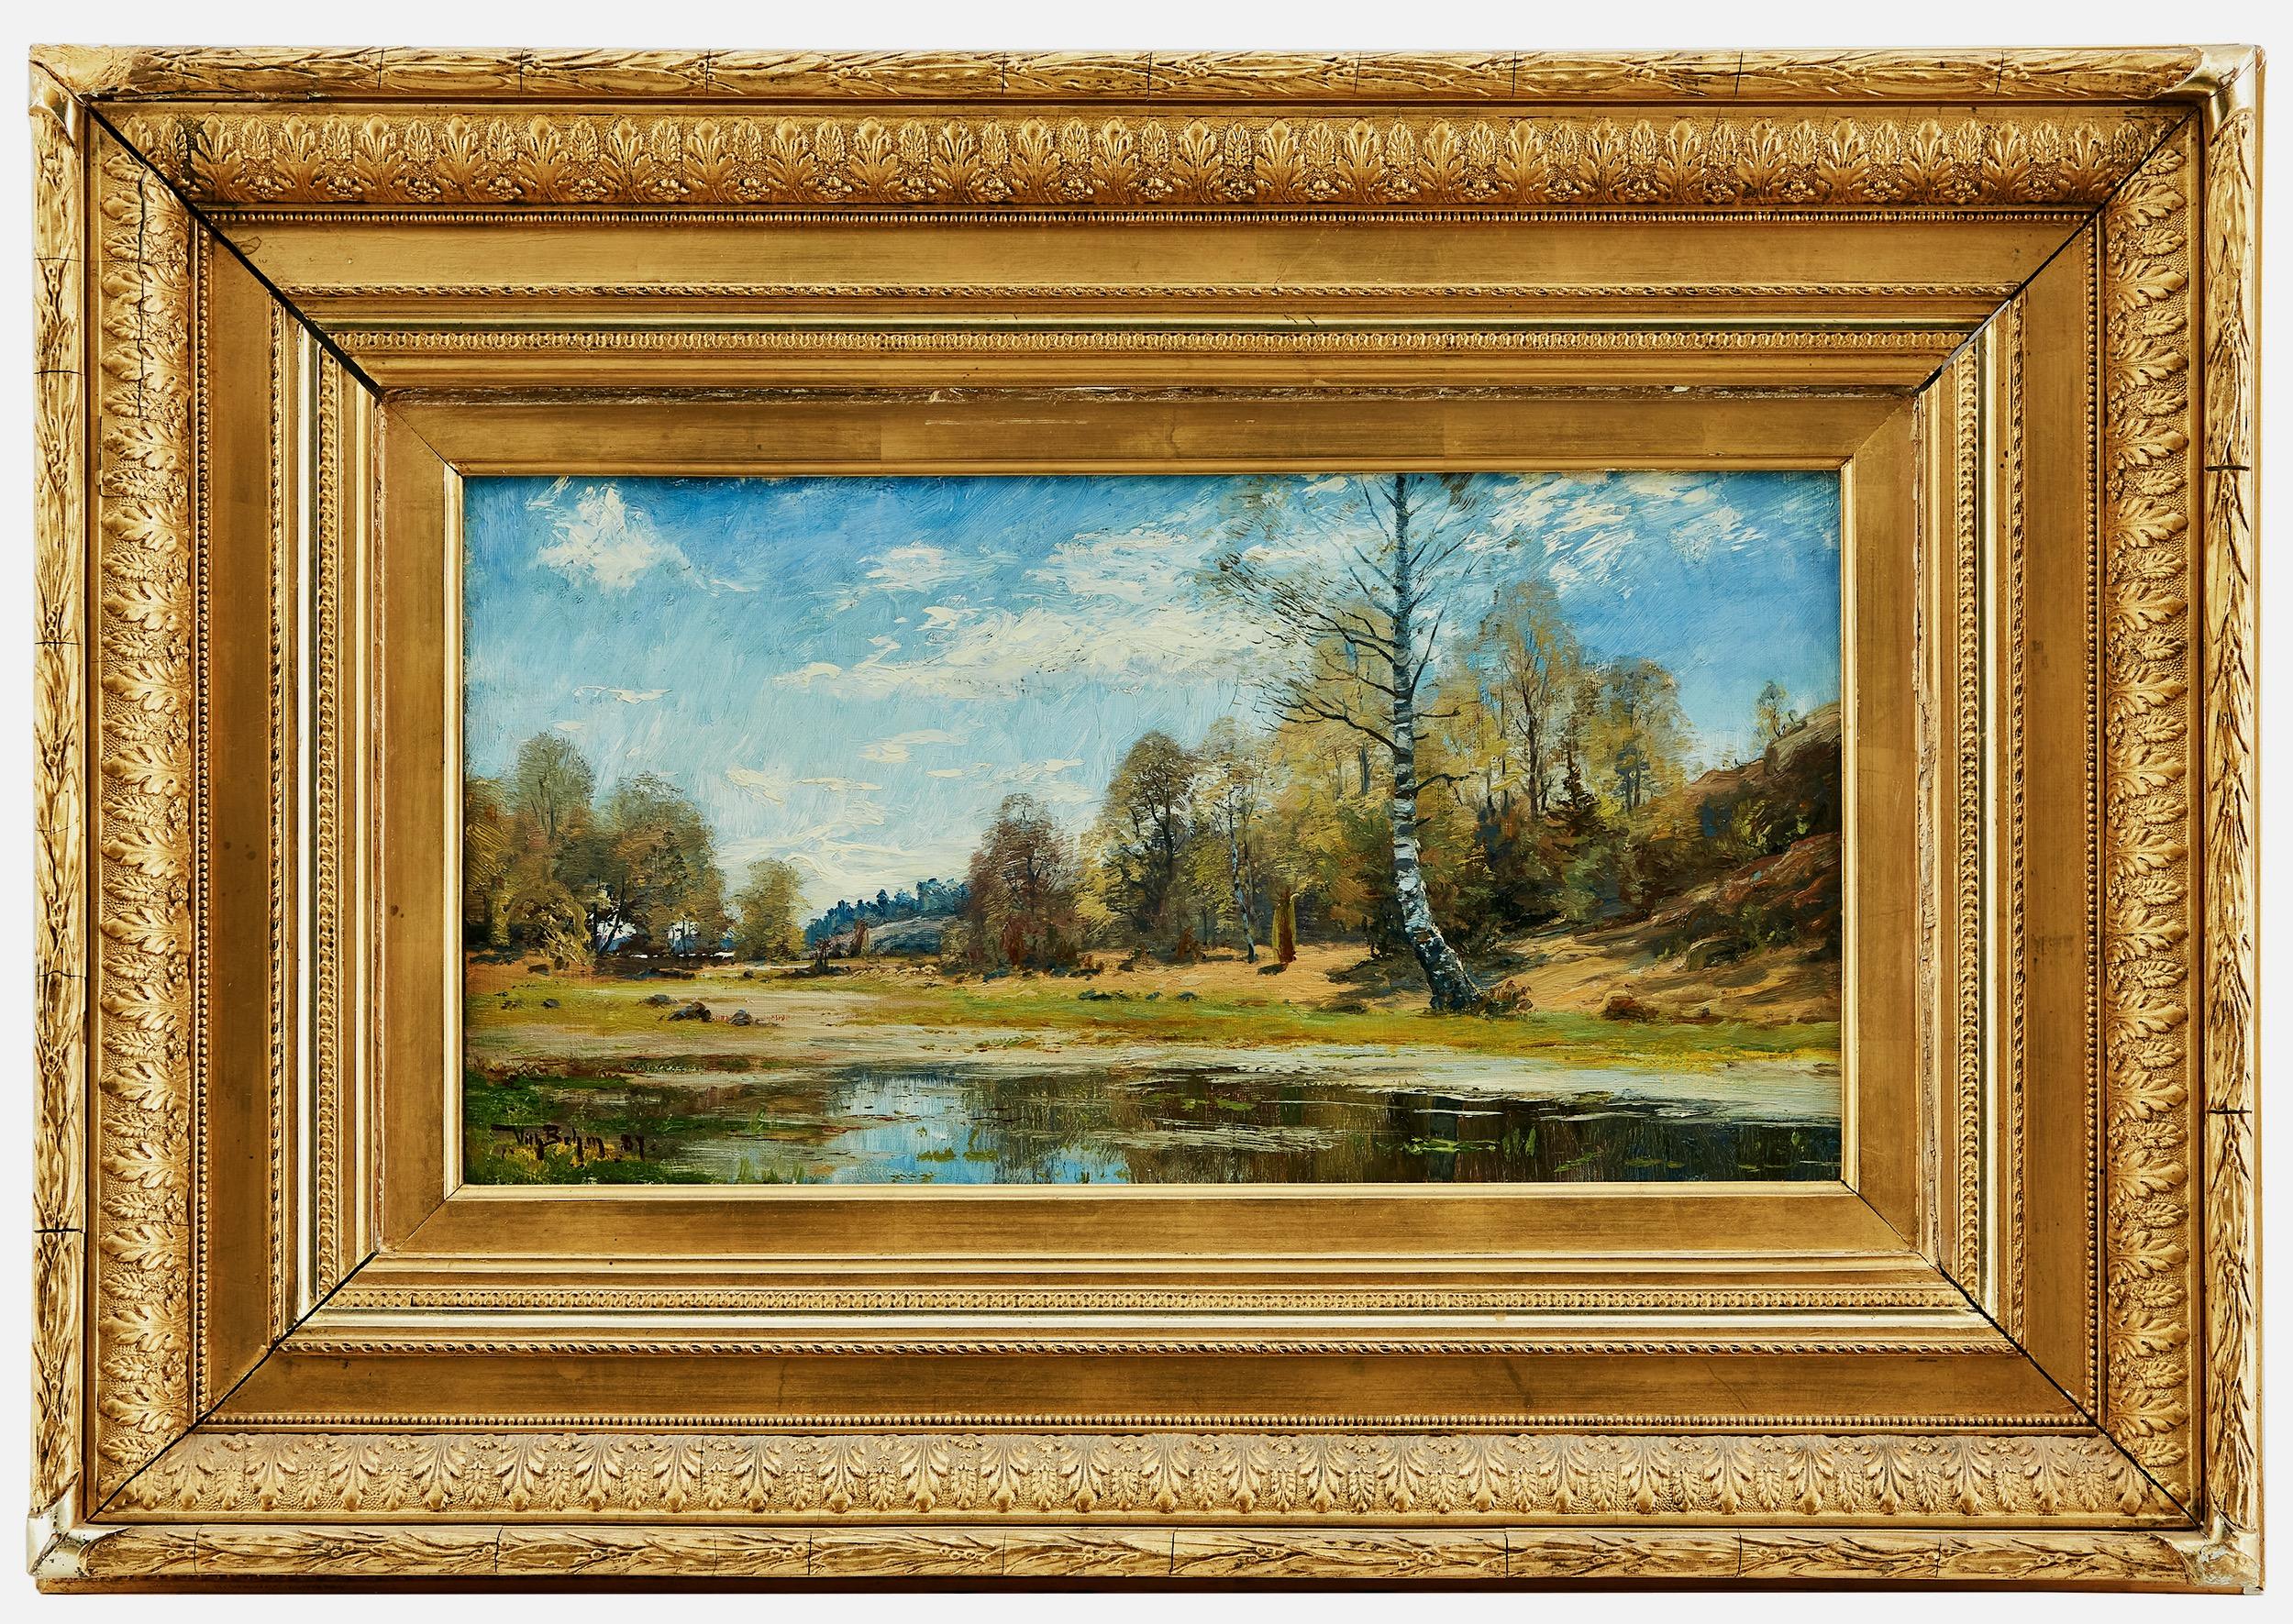 Paysage avec lac, représentant l'automne. Huile sur toile. Peint en 1887 - Réalisme Painting par WILHELM EMANUEL BEHM